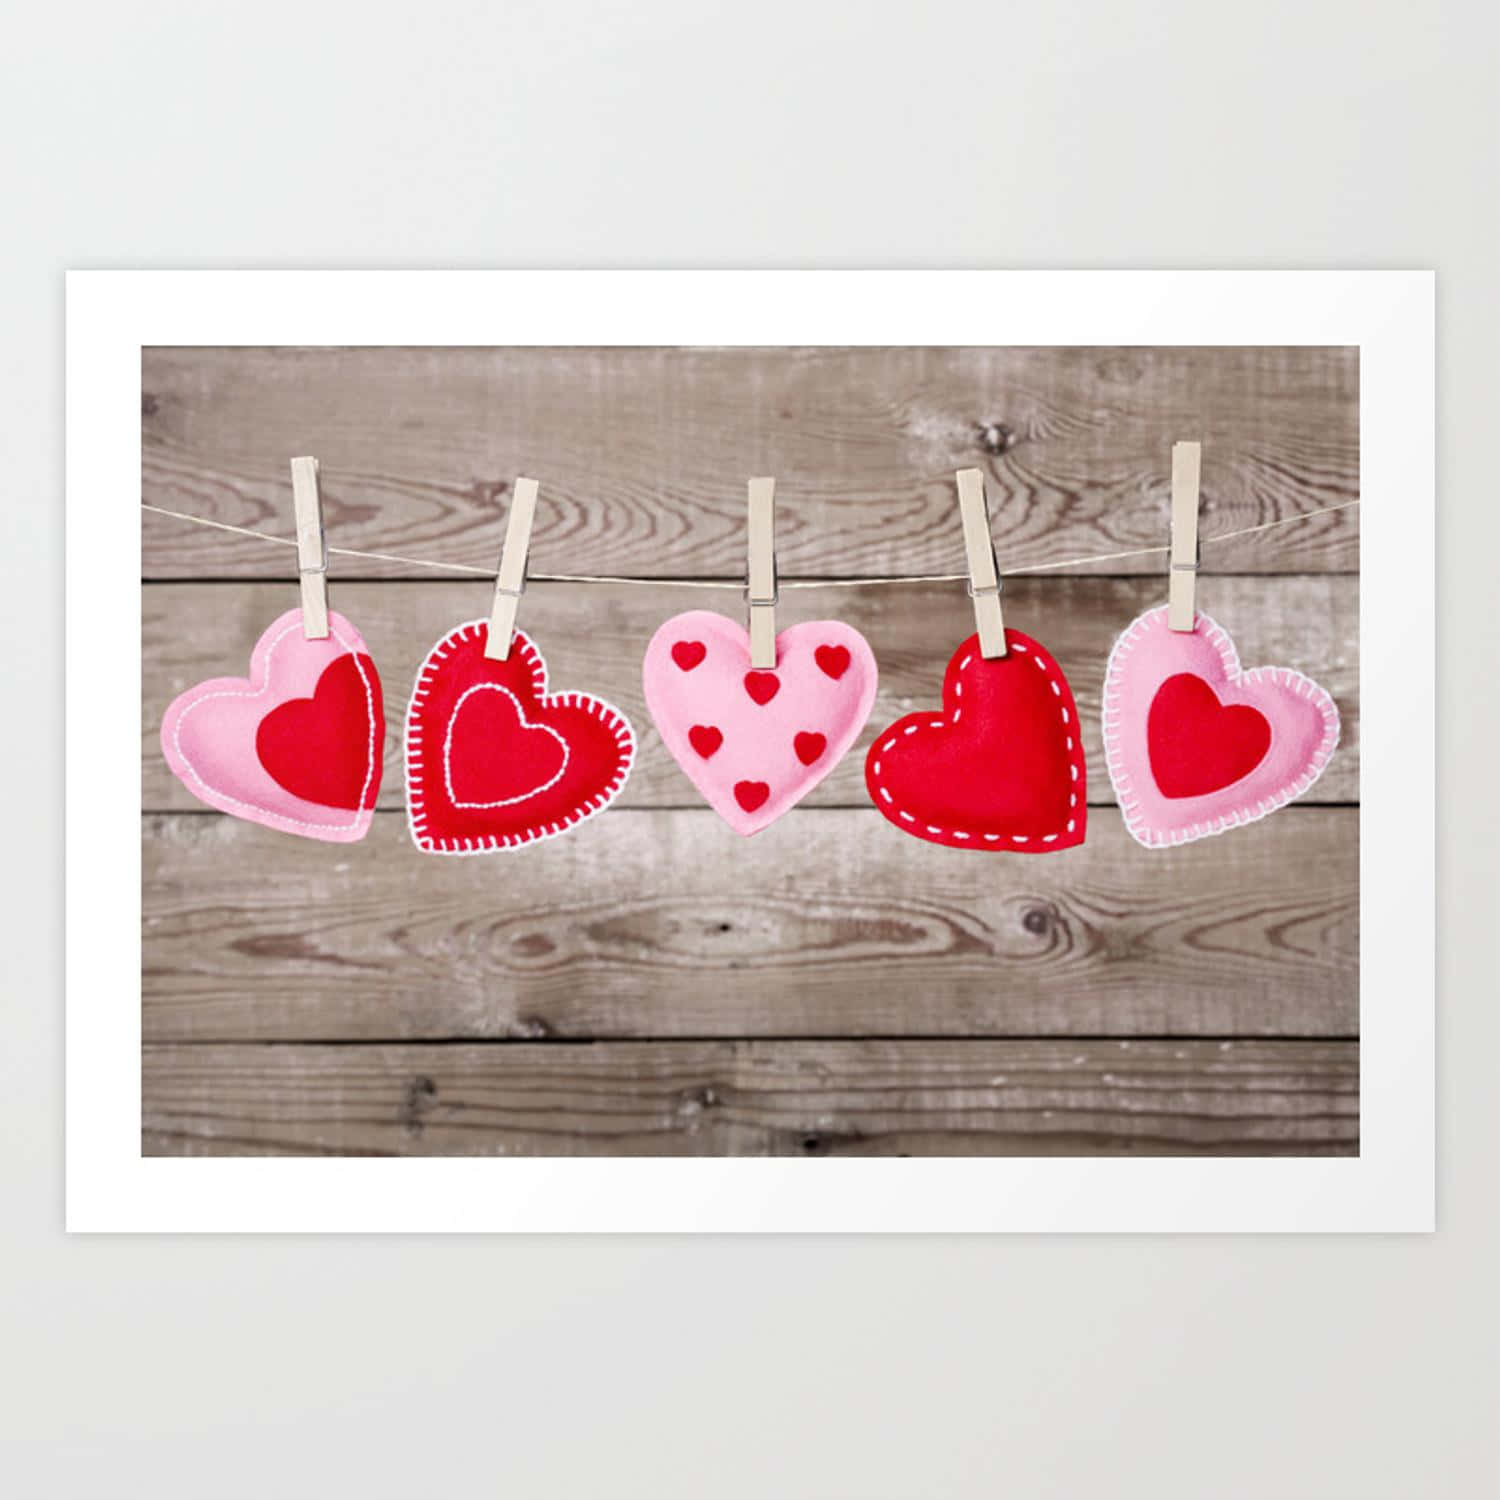 Fejr din rustikke Valentinsdag med en udendørs picnic eller romantisk gåtur. Wallpaper